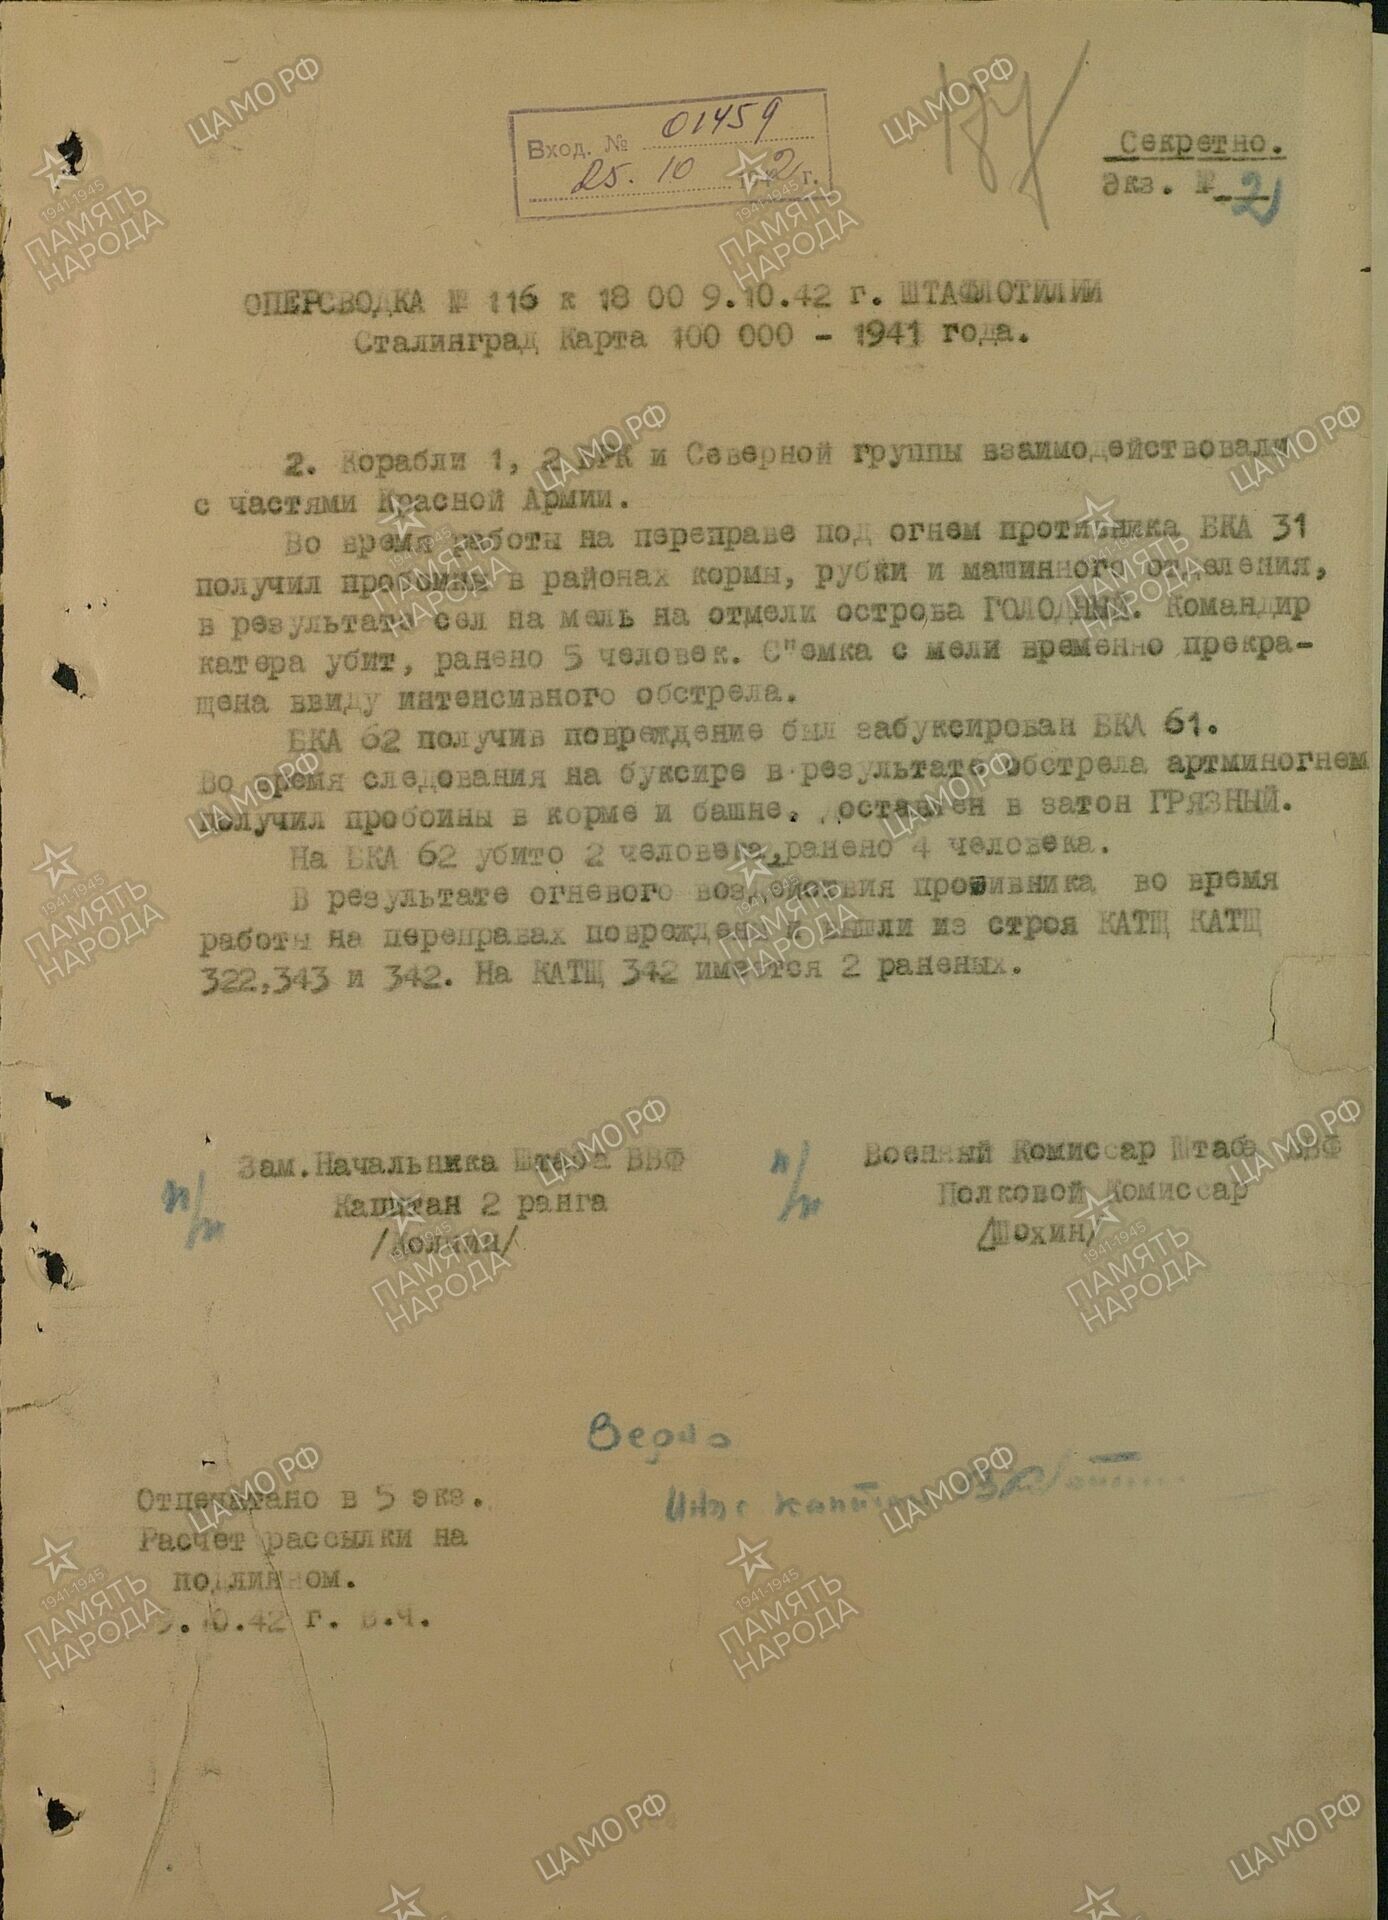 Оперсводка №115 к 18:00 9.10.1942 г., штаб флотилии, Сталинград